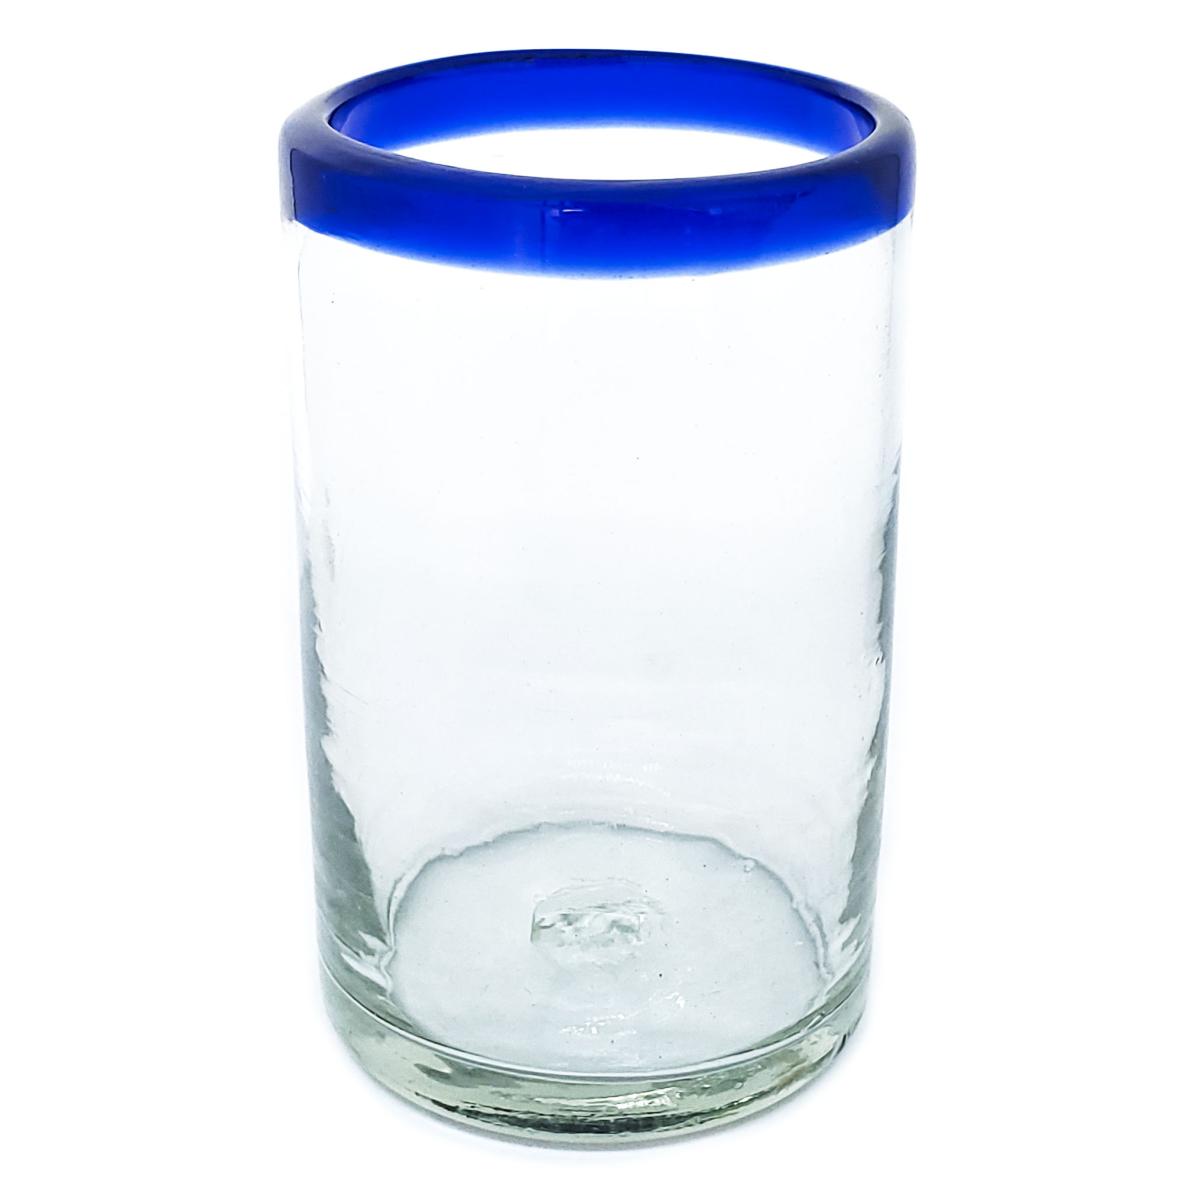 Borde de Color / Juego de 6 vasos grandes con borde azul cobalto / stos artesanales vasos le darn un toque clsico a su bebida favorita.